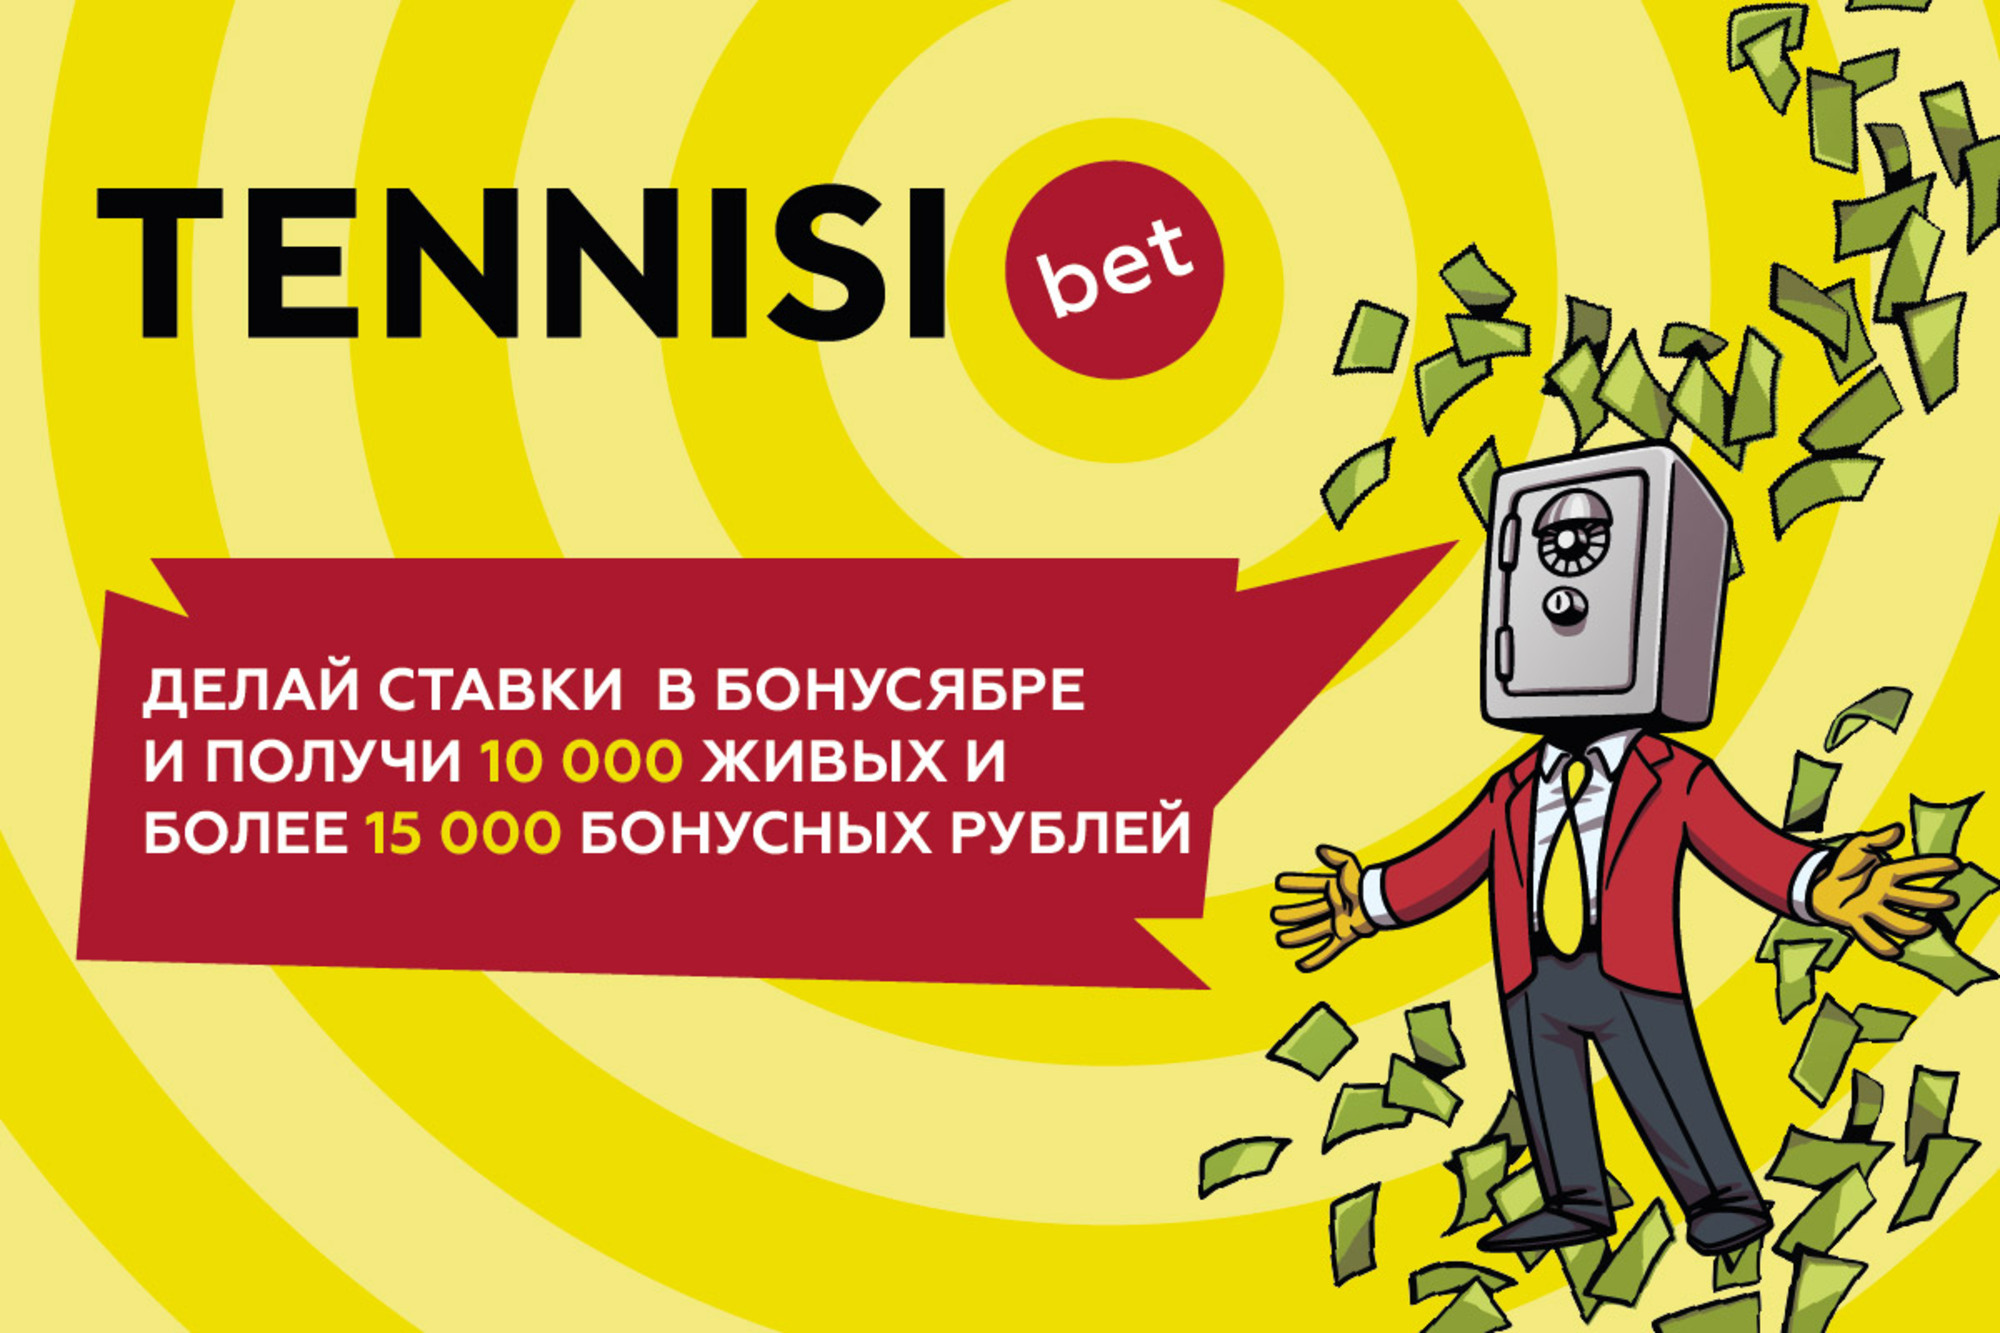 «Тенниси» объявляет бонусябрь — месяц ежедневных бонусов